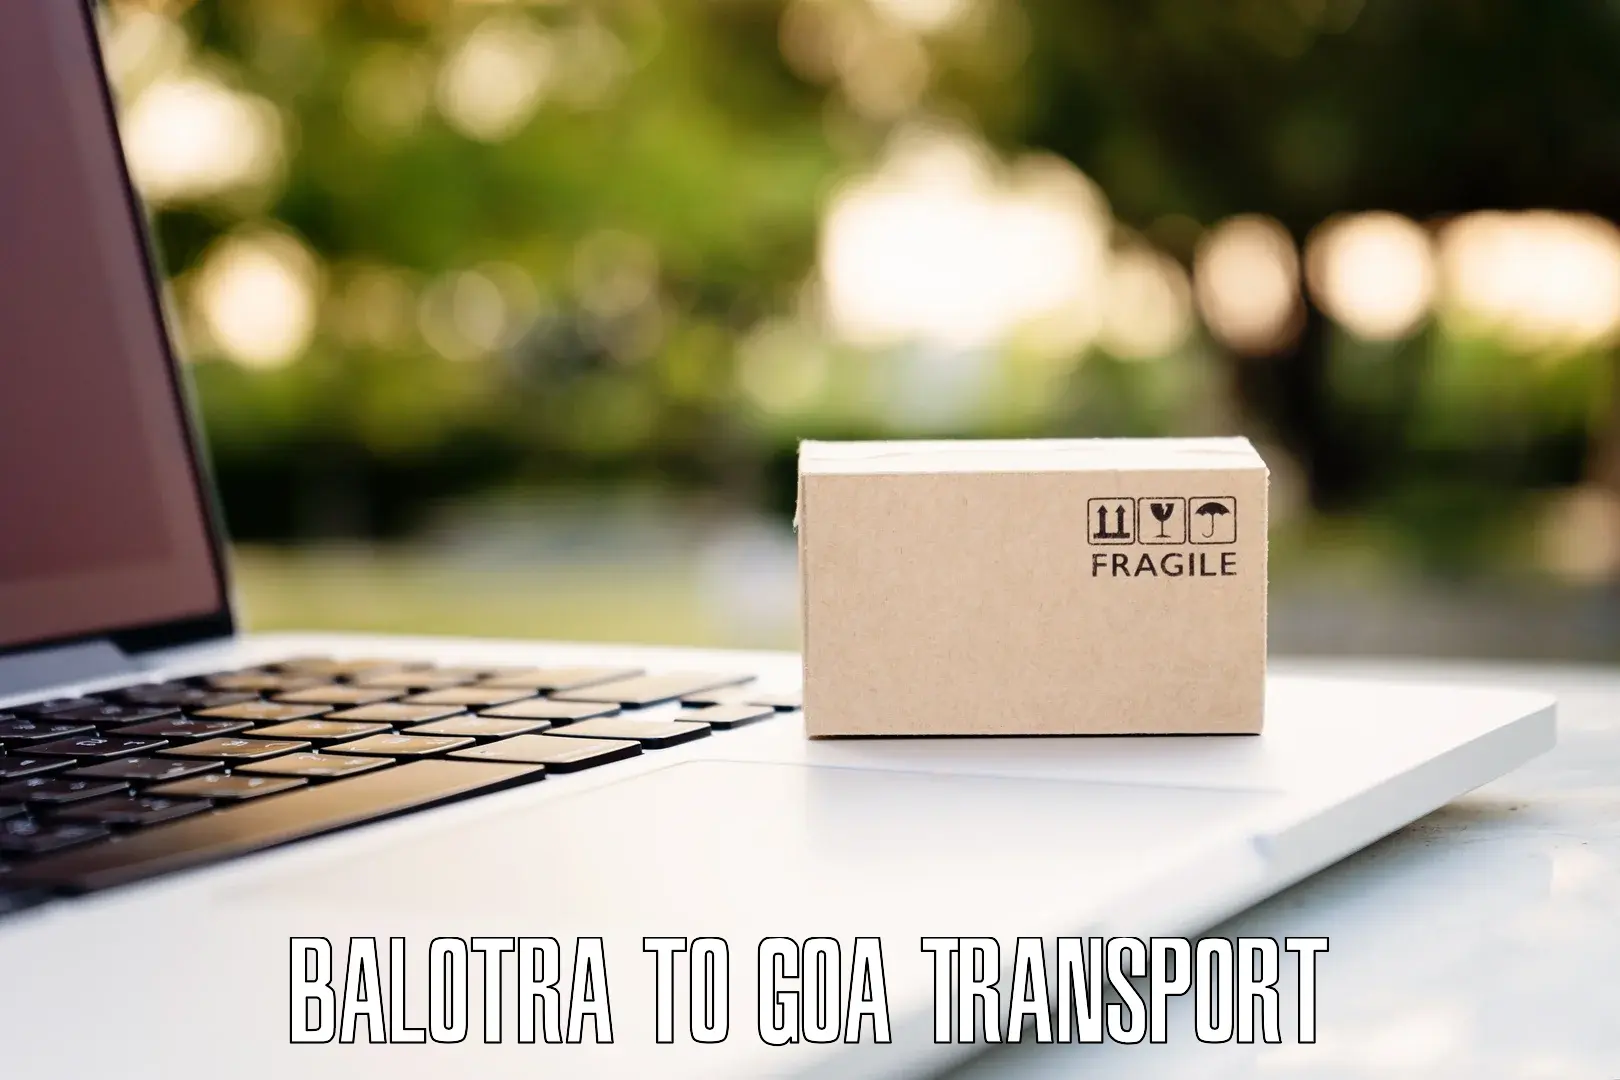 All India transport service Balotra to Canacona